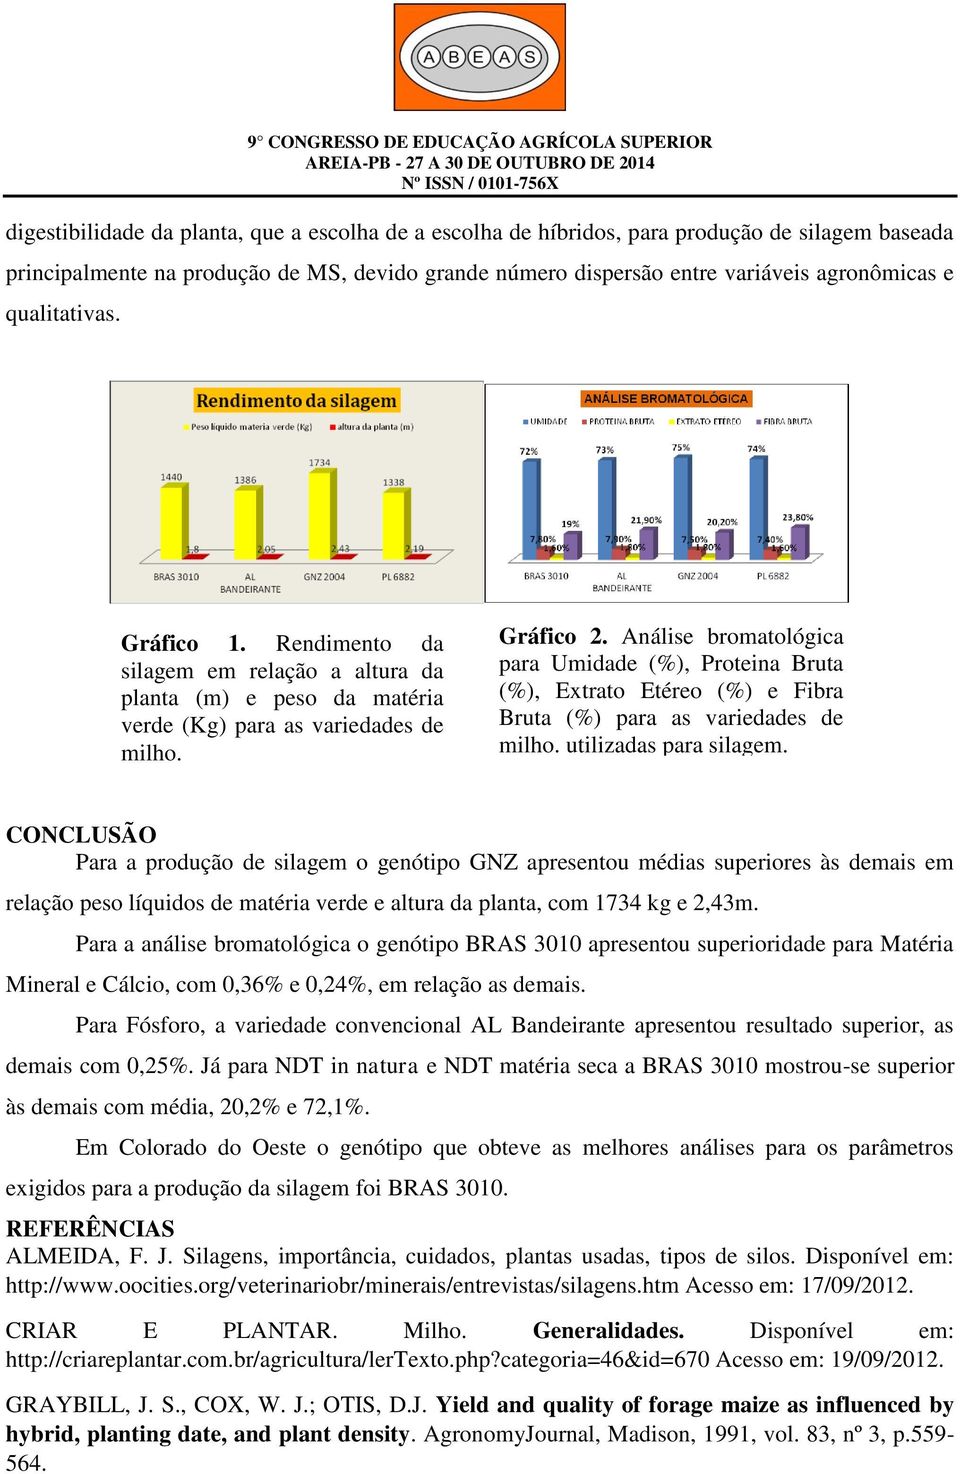 Análise bromatológica para Umidade (%), Proteina Bruta (%), Extrato Etéreo (%) e Fibra Bruta (%) para as variedades de milho. utilizadas para silagem.